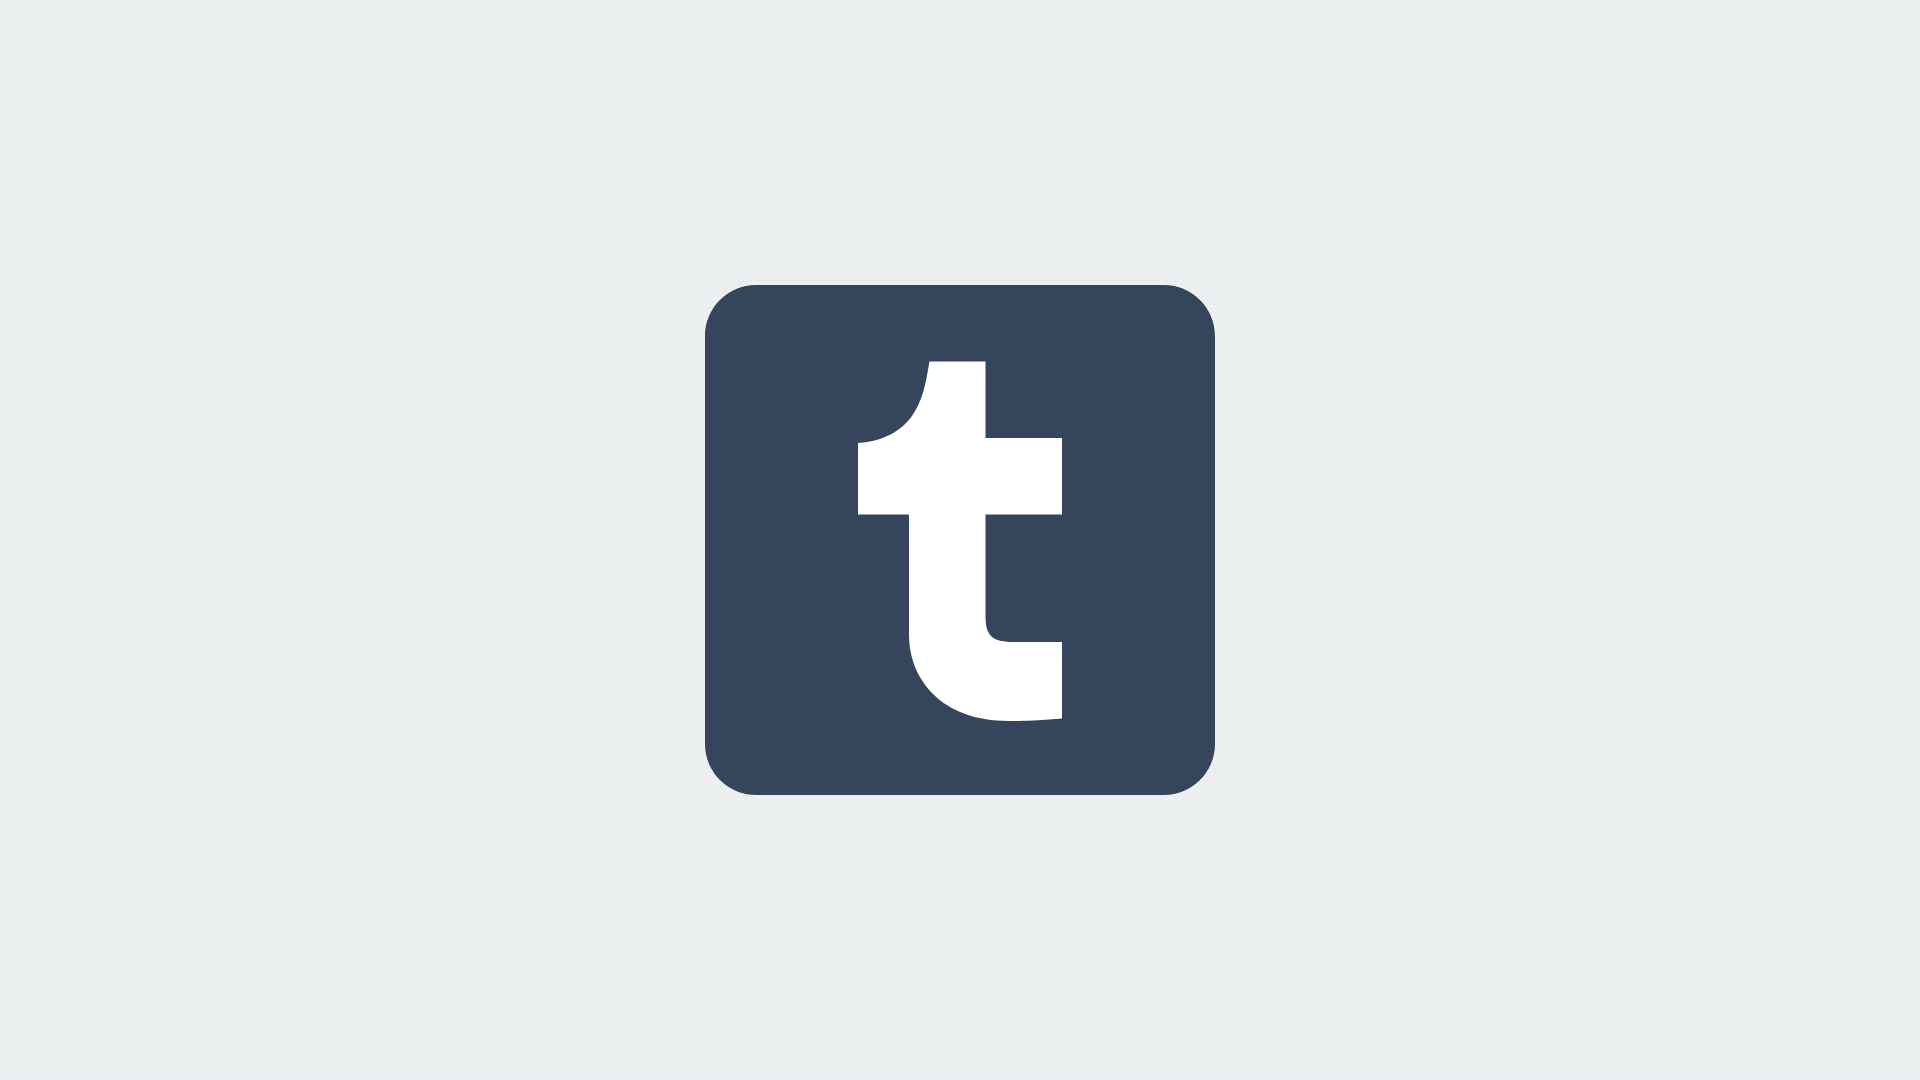 Tumblr logo descending 